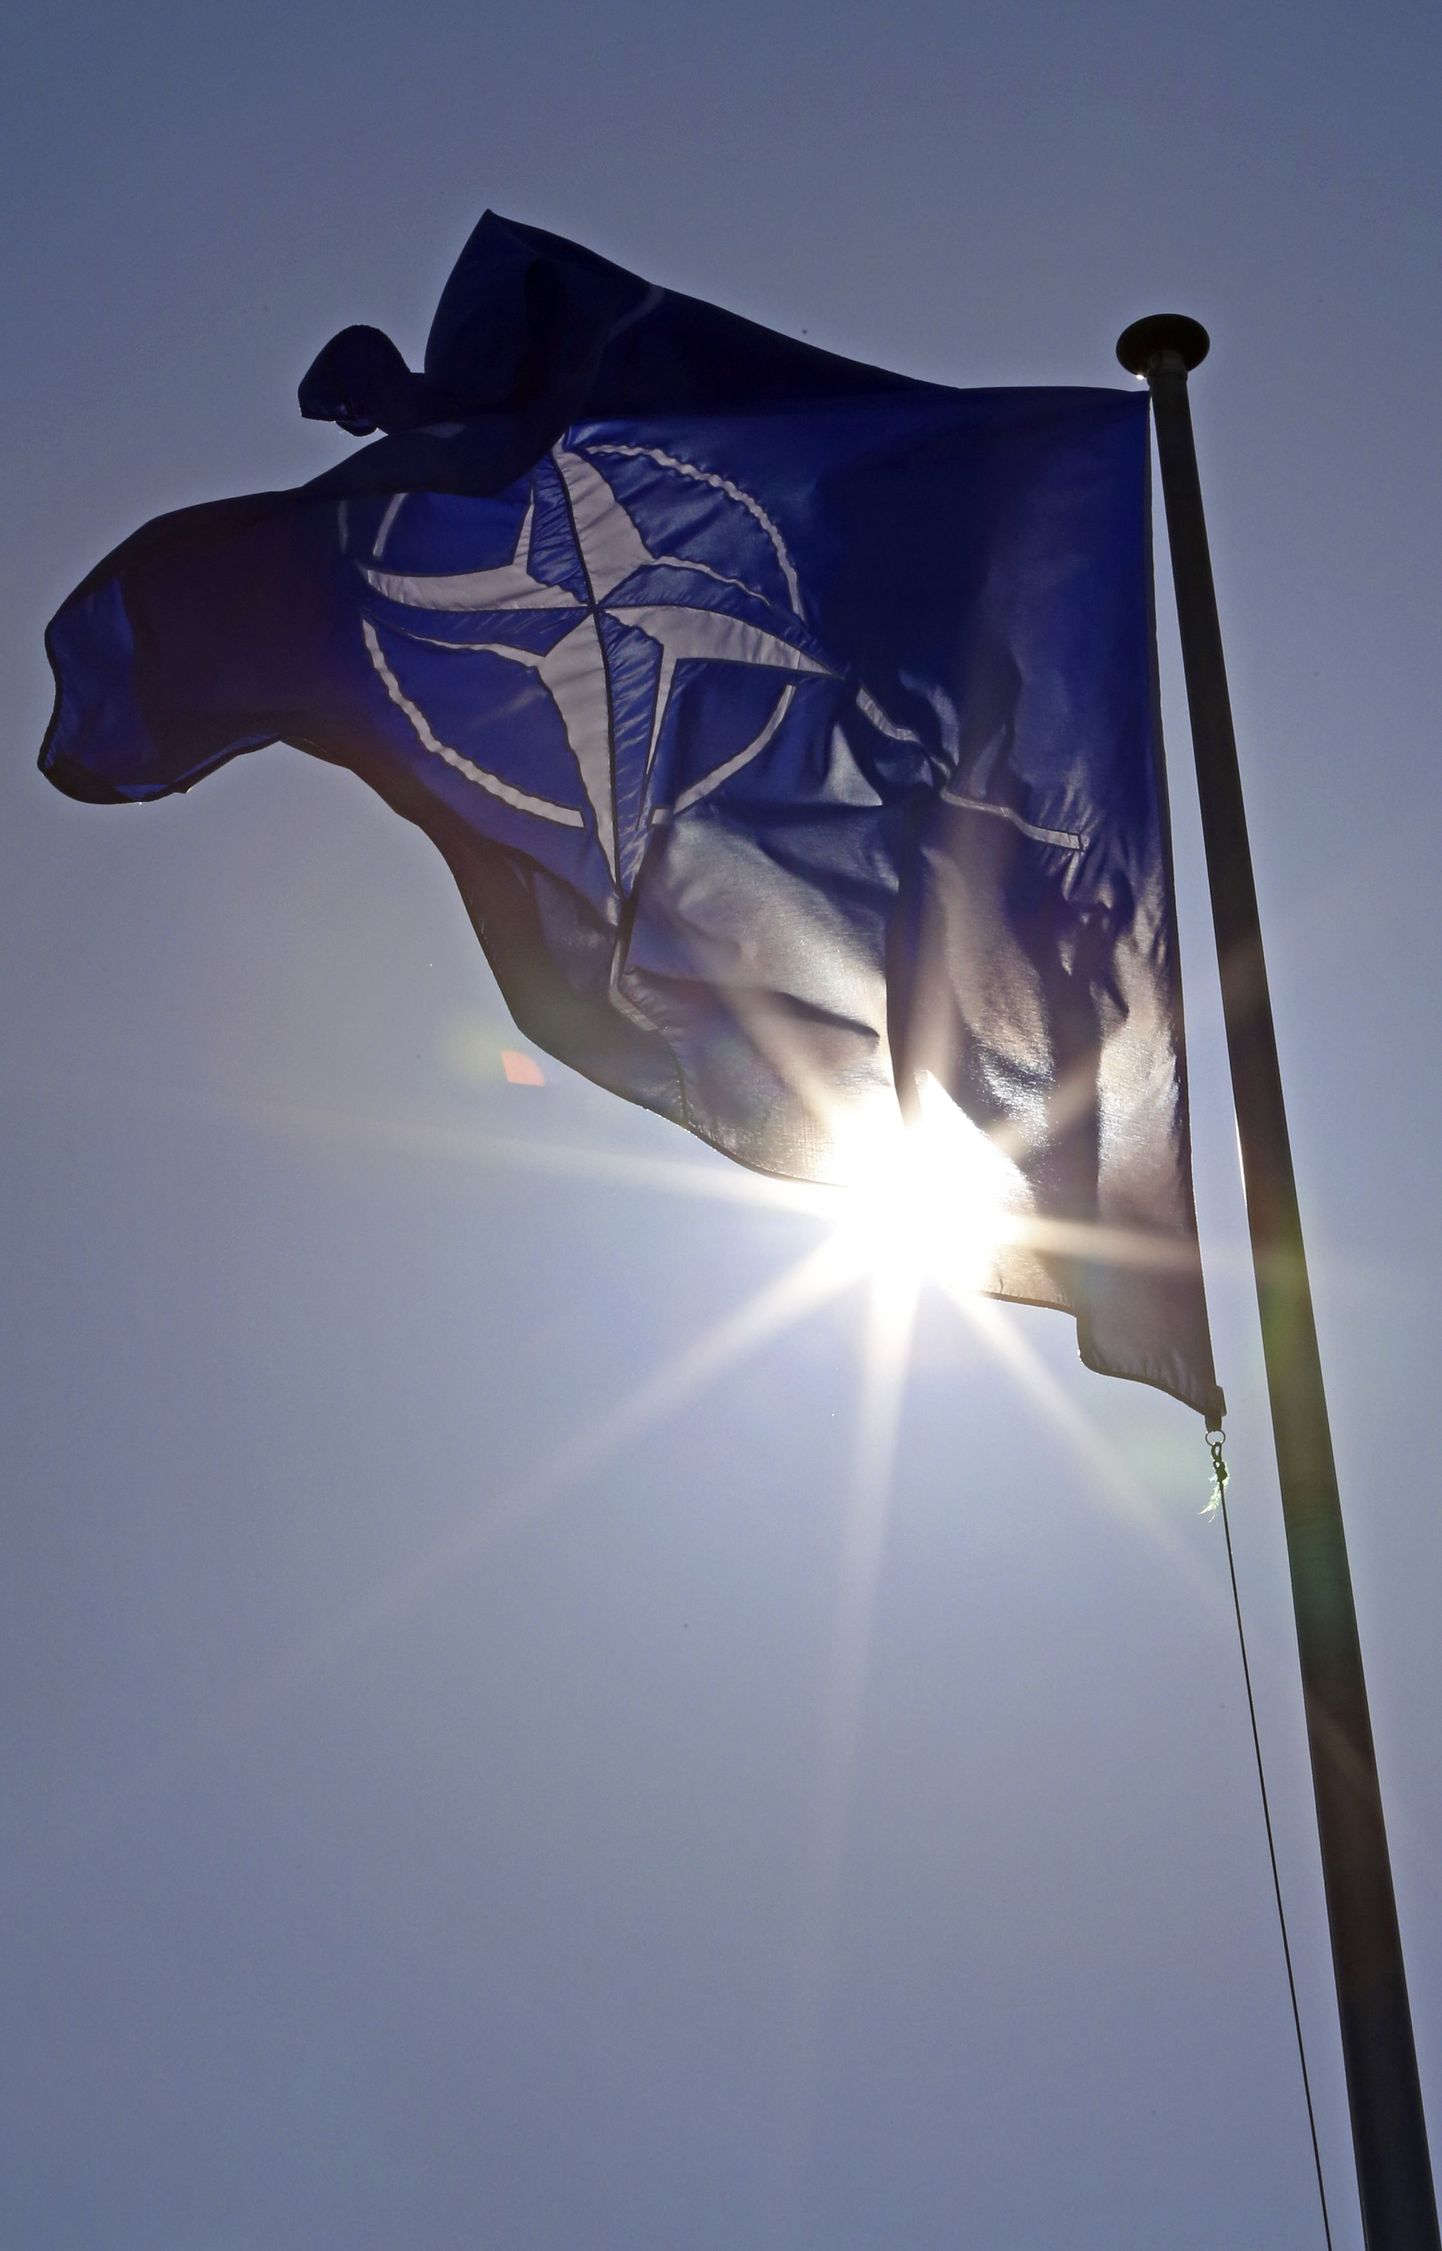 NATO lipp